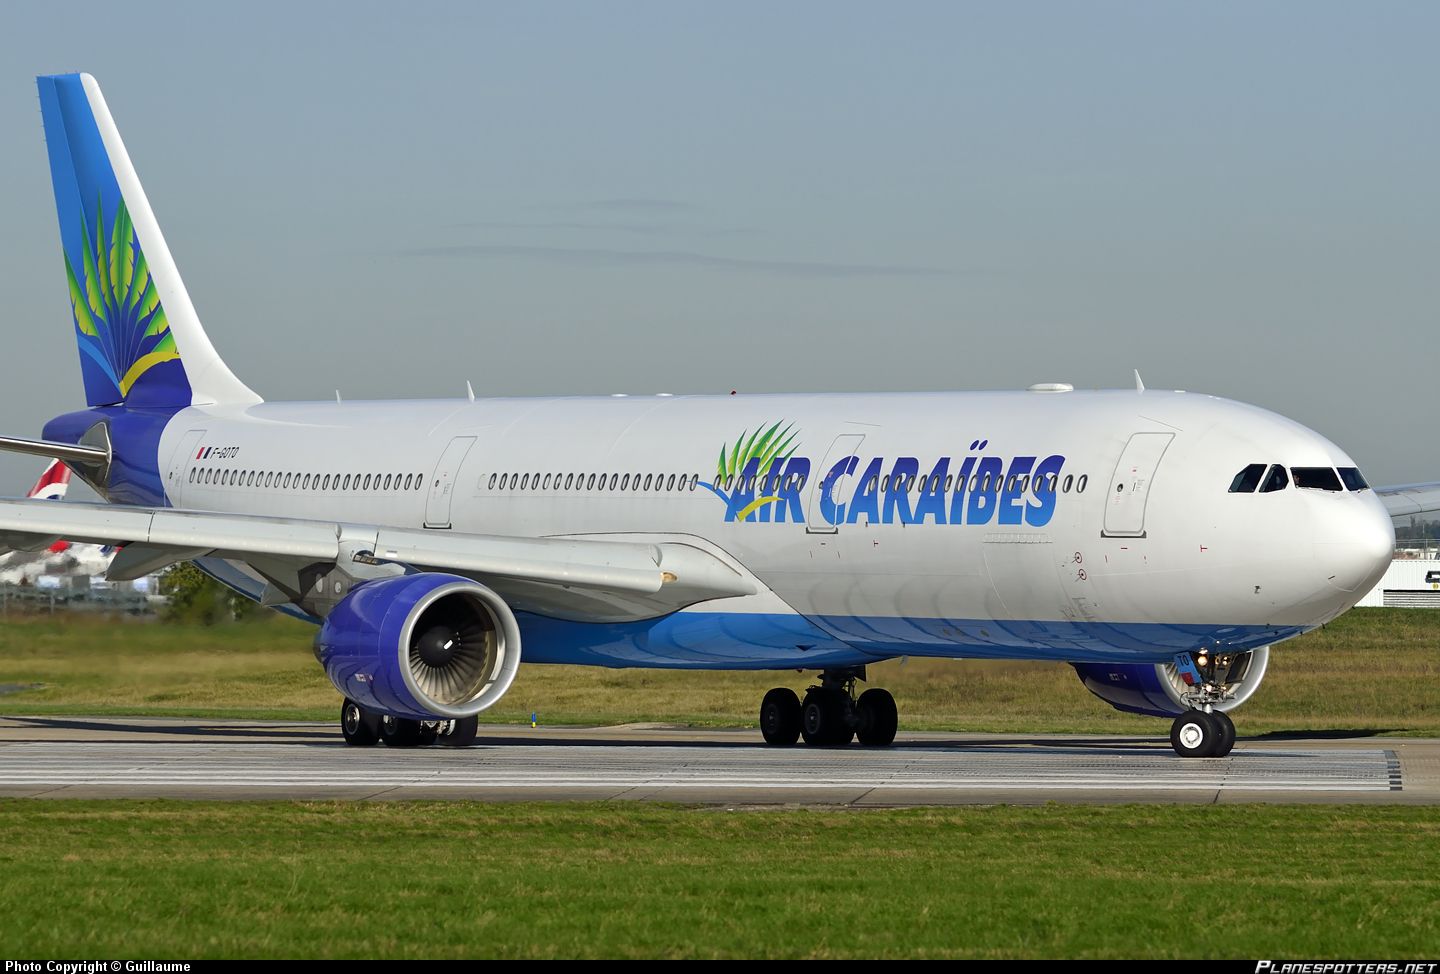 Desserte aérienne : Air Caraïbes ouvre Paris – Nassau aux Bahamas via San Salvador